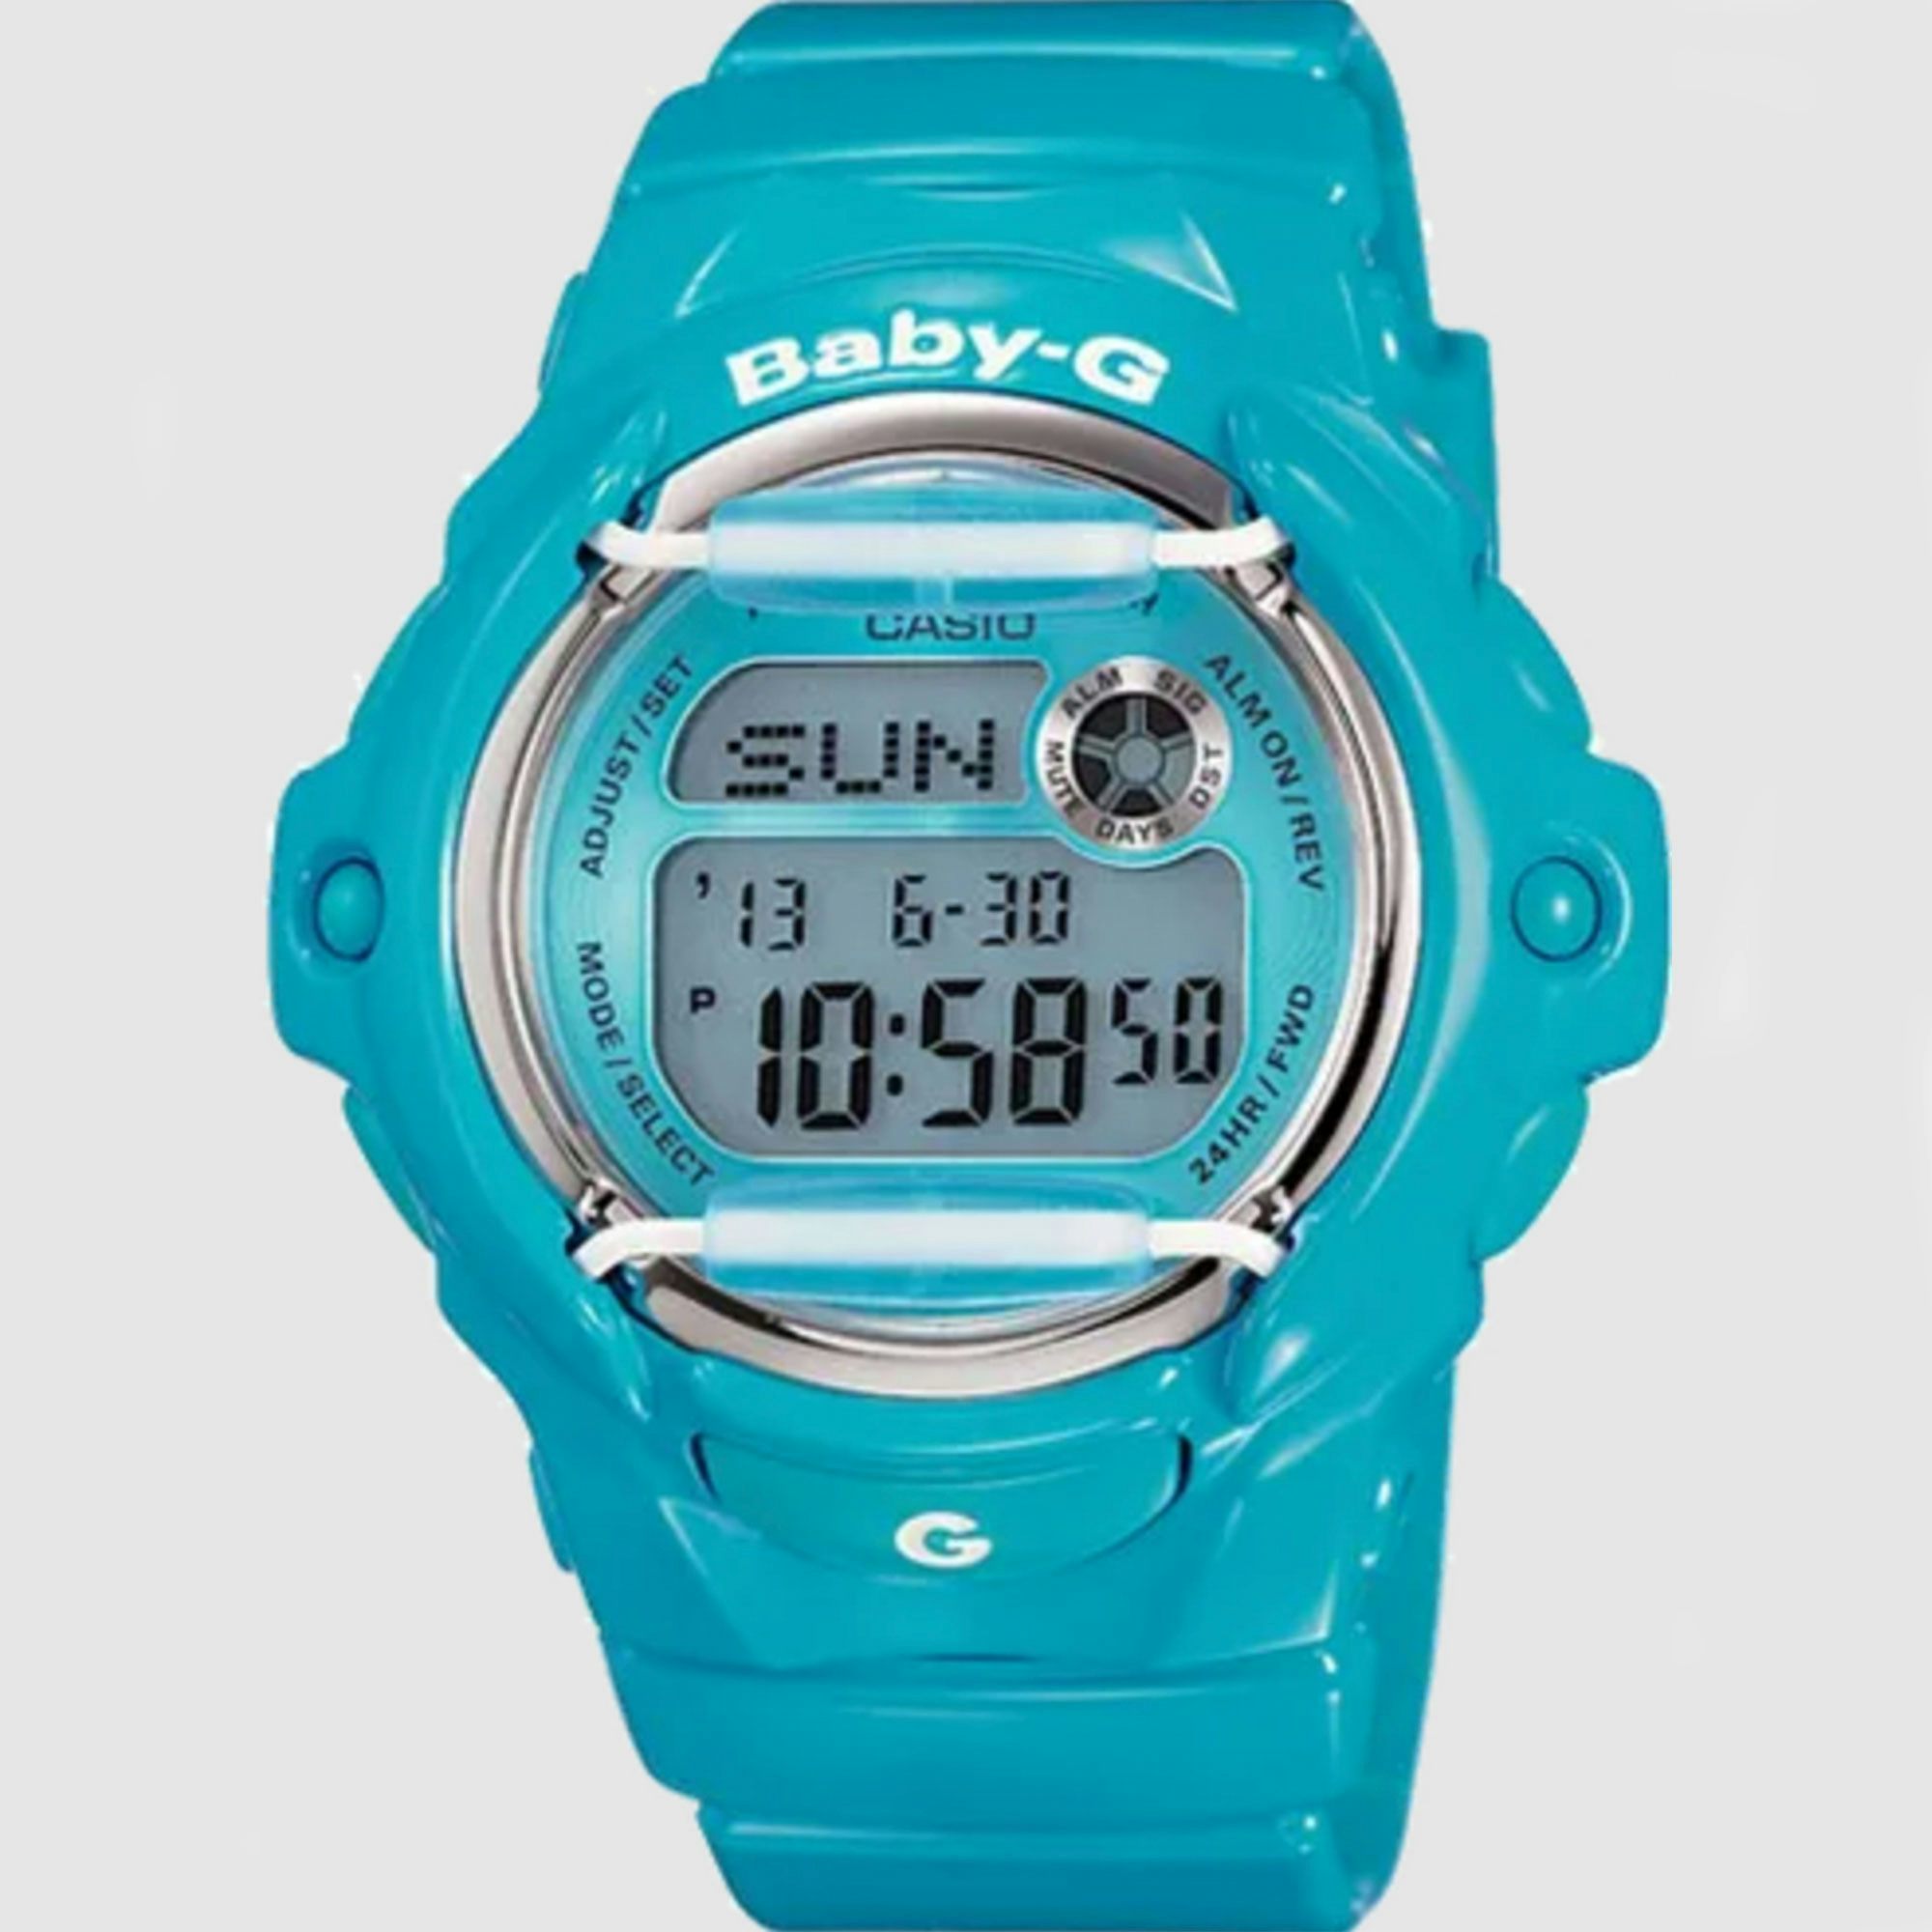 A blue Casio Baby G watch